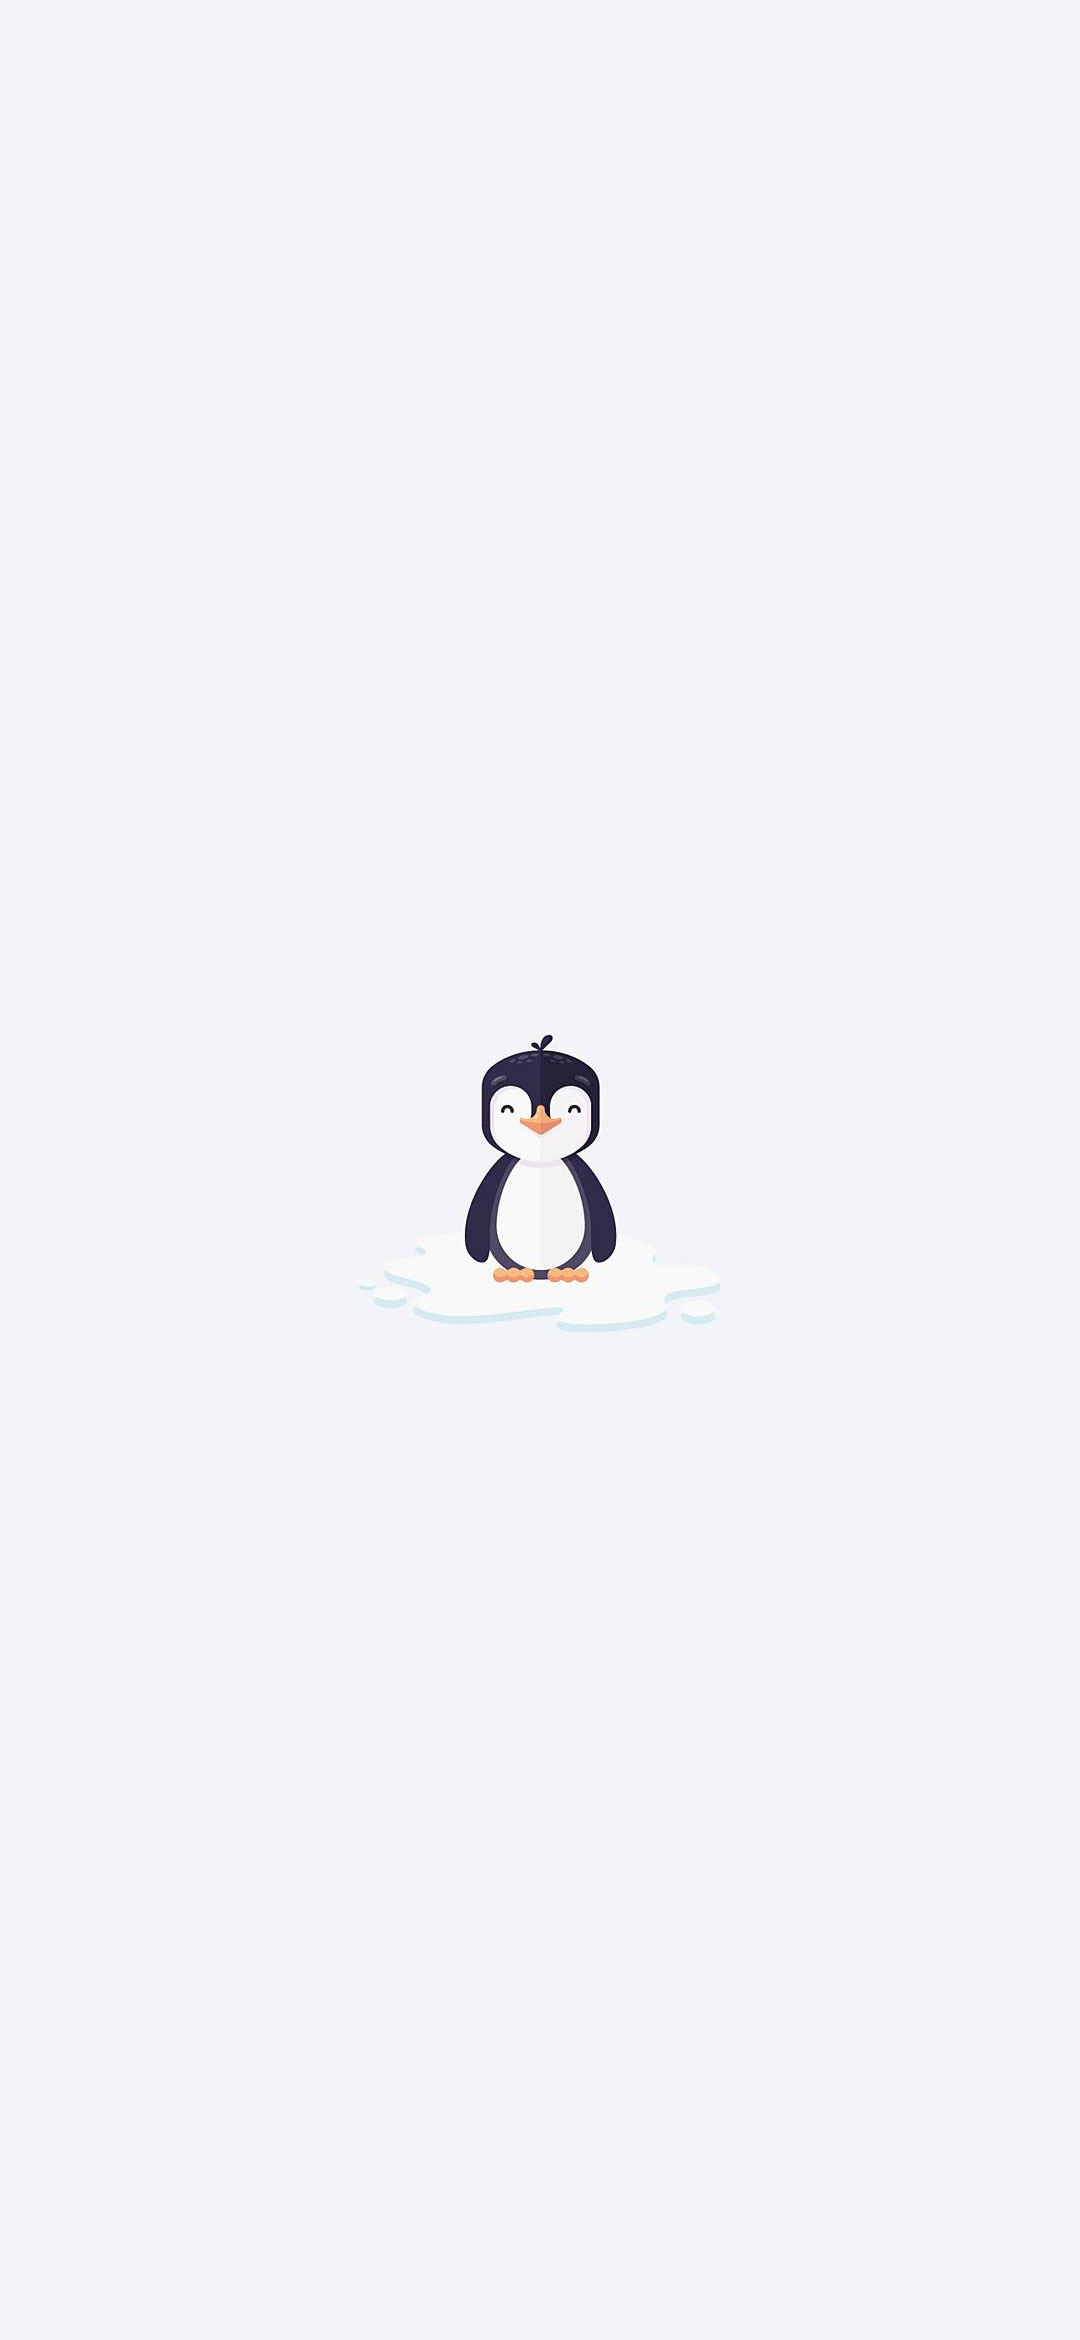 Cute Penguin Wallpaper - Cartoon , HD Wallpaper & Backgrounds